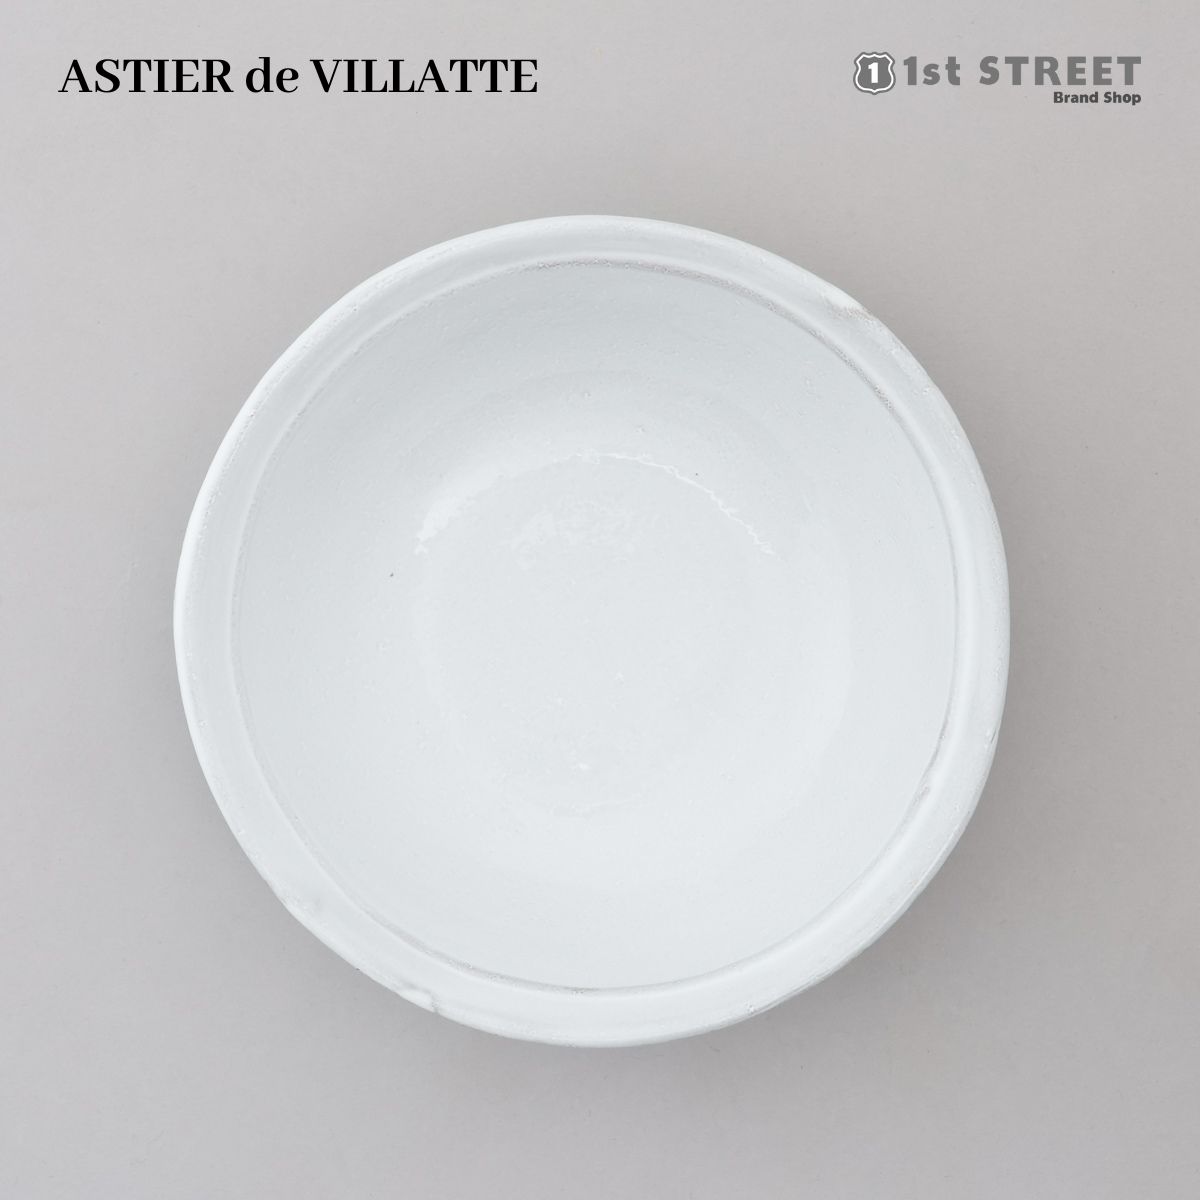 アスティエ・ド・ヴィラット ASTIER de VILLATTE プレート サイズ スープ 皿 ボウル 食器 洋食器 陶器 おしゃれ ギフト ASCSMP2 SIMPLE